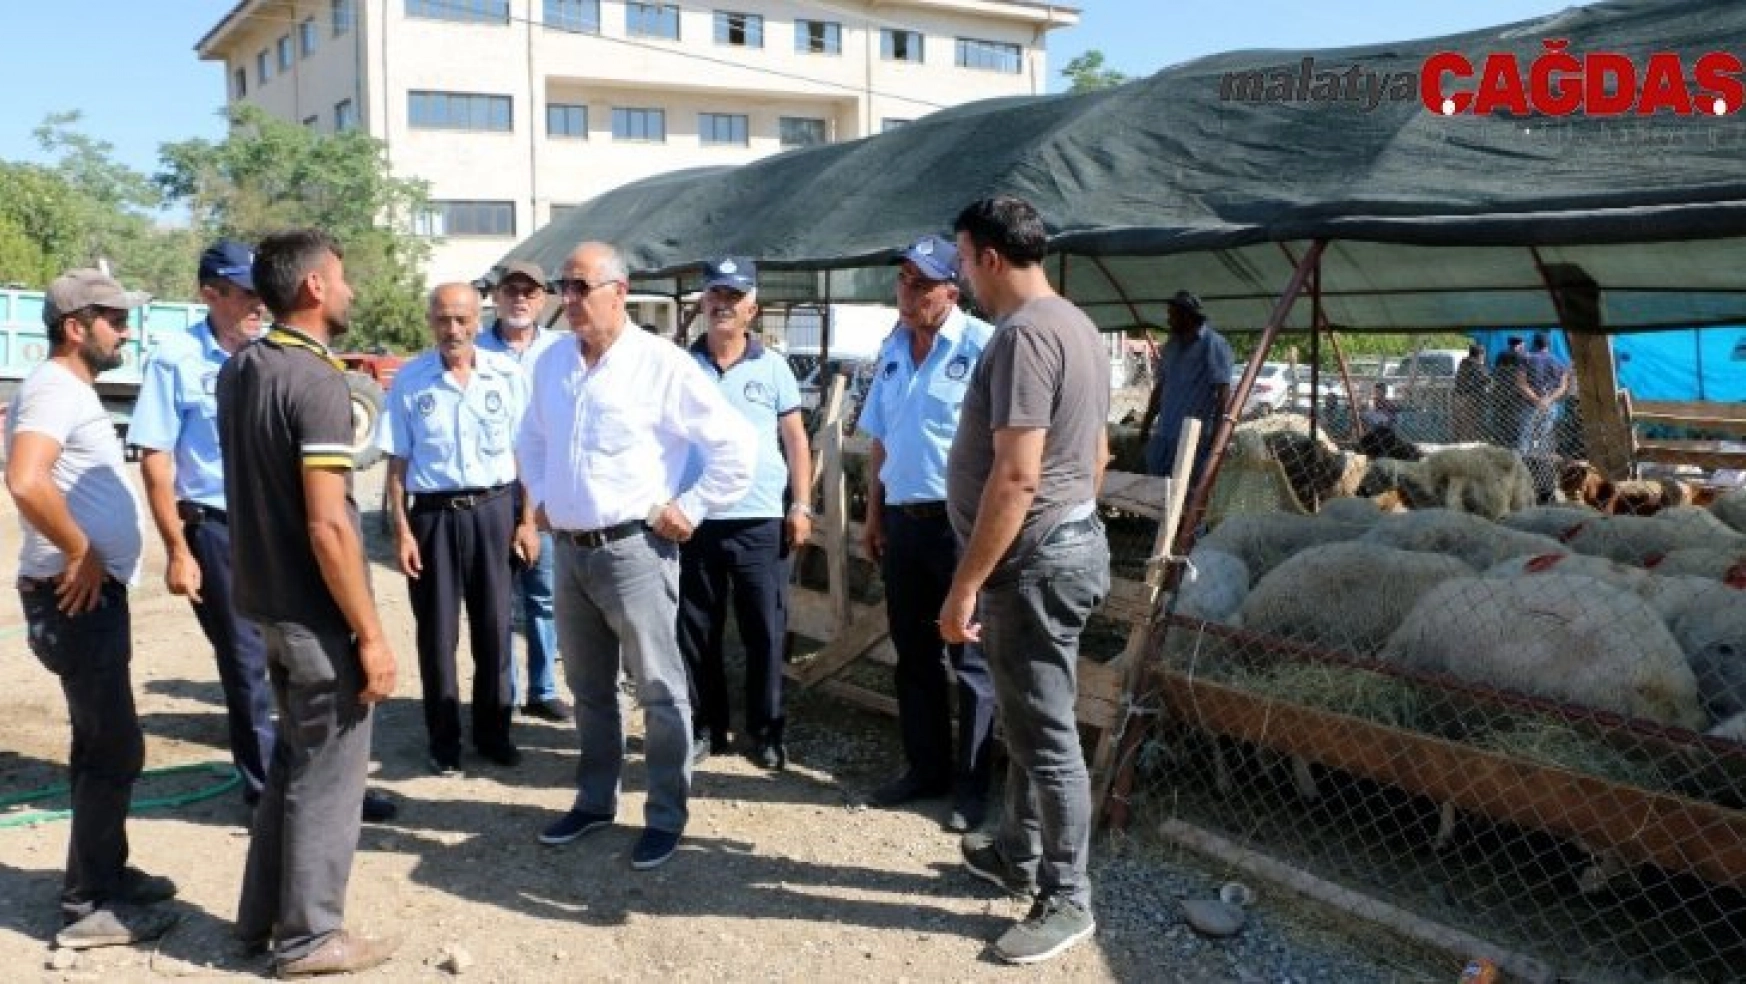 Başkan Karadağ hayvan pazarını denetledi